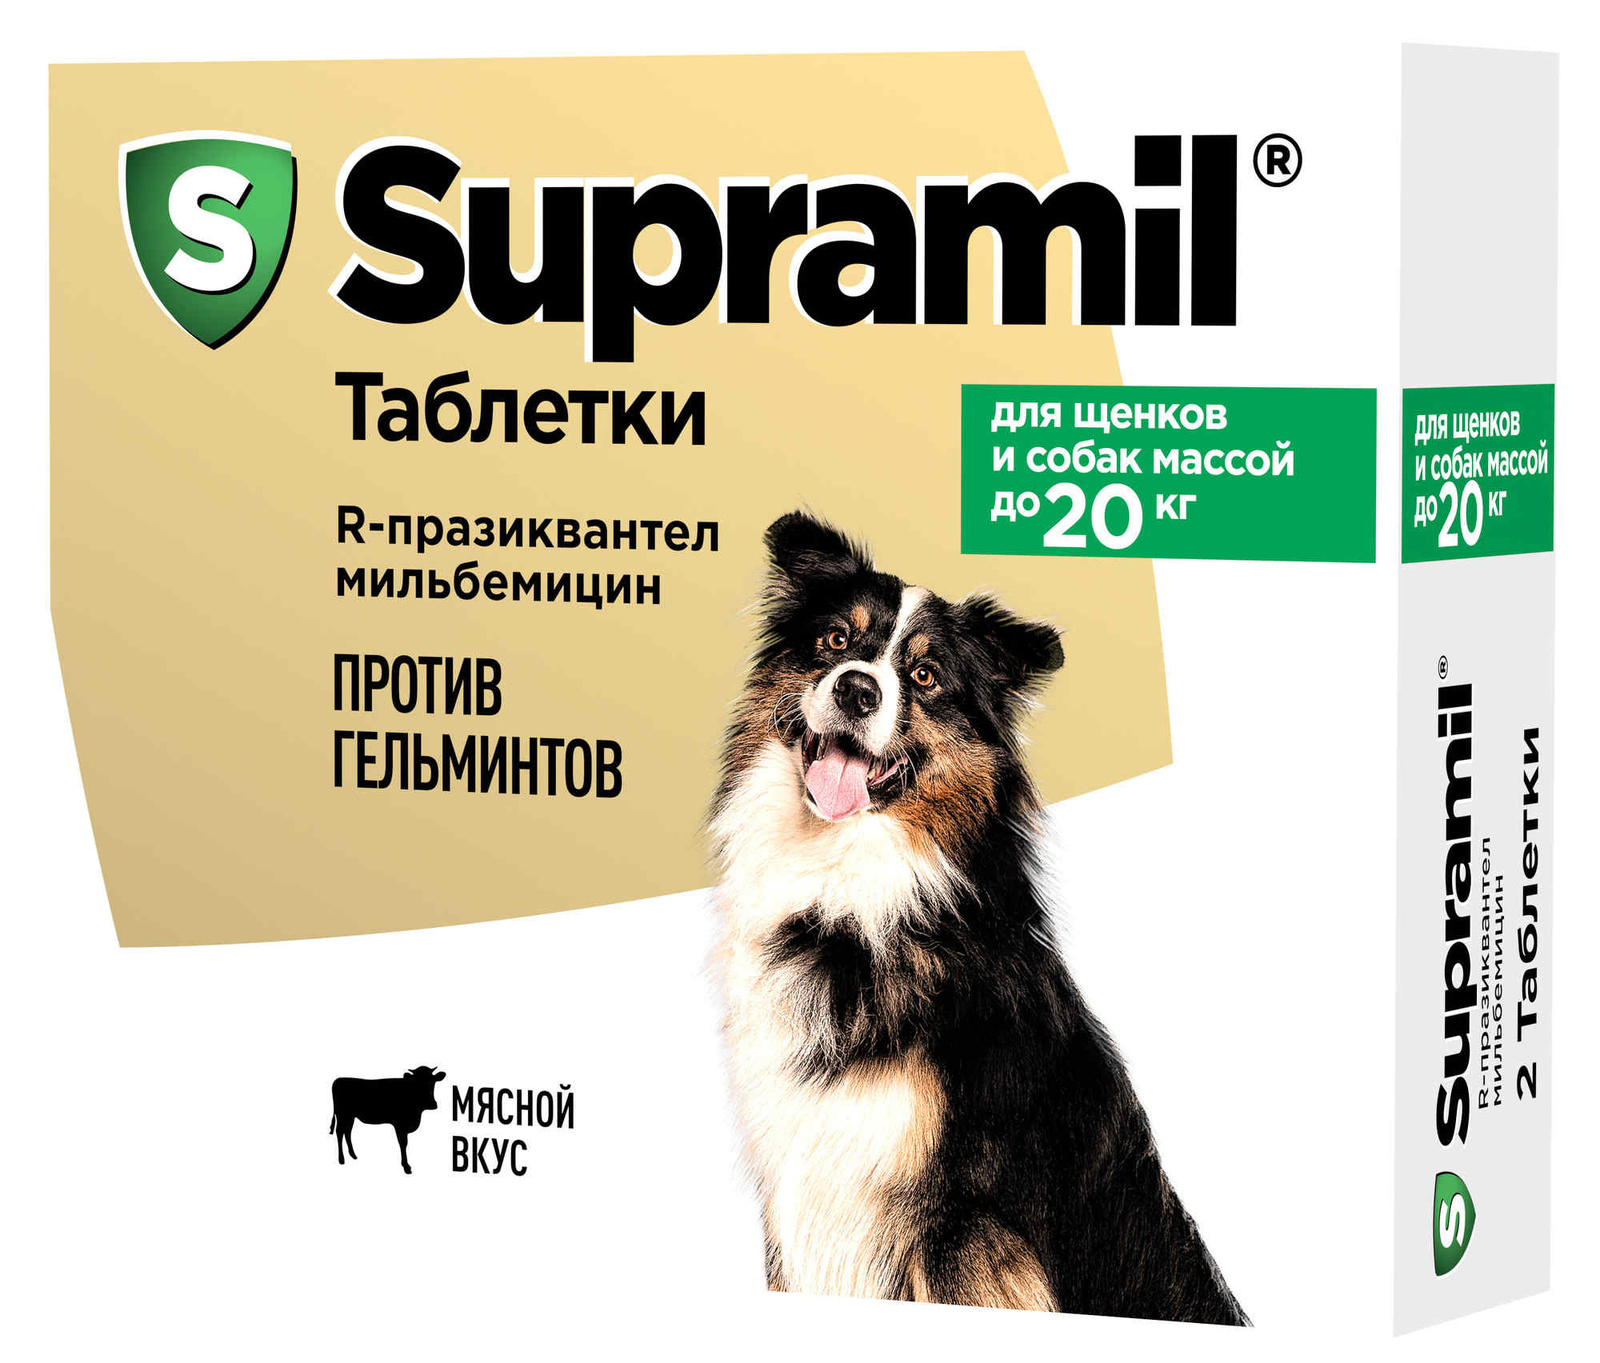 Астрафарм Астрафарм антигельминтный препарат Supramil для щенков и собак массой до 20 кг, таблетки (2 таб.)